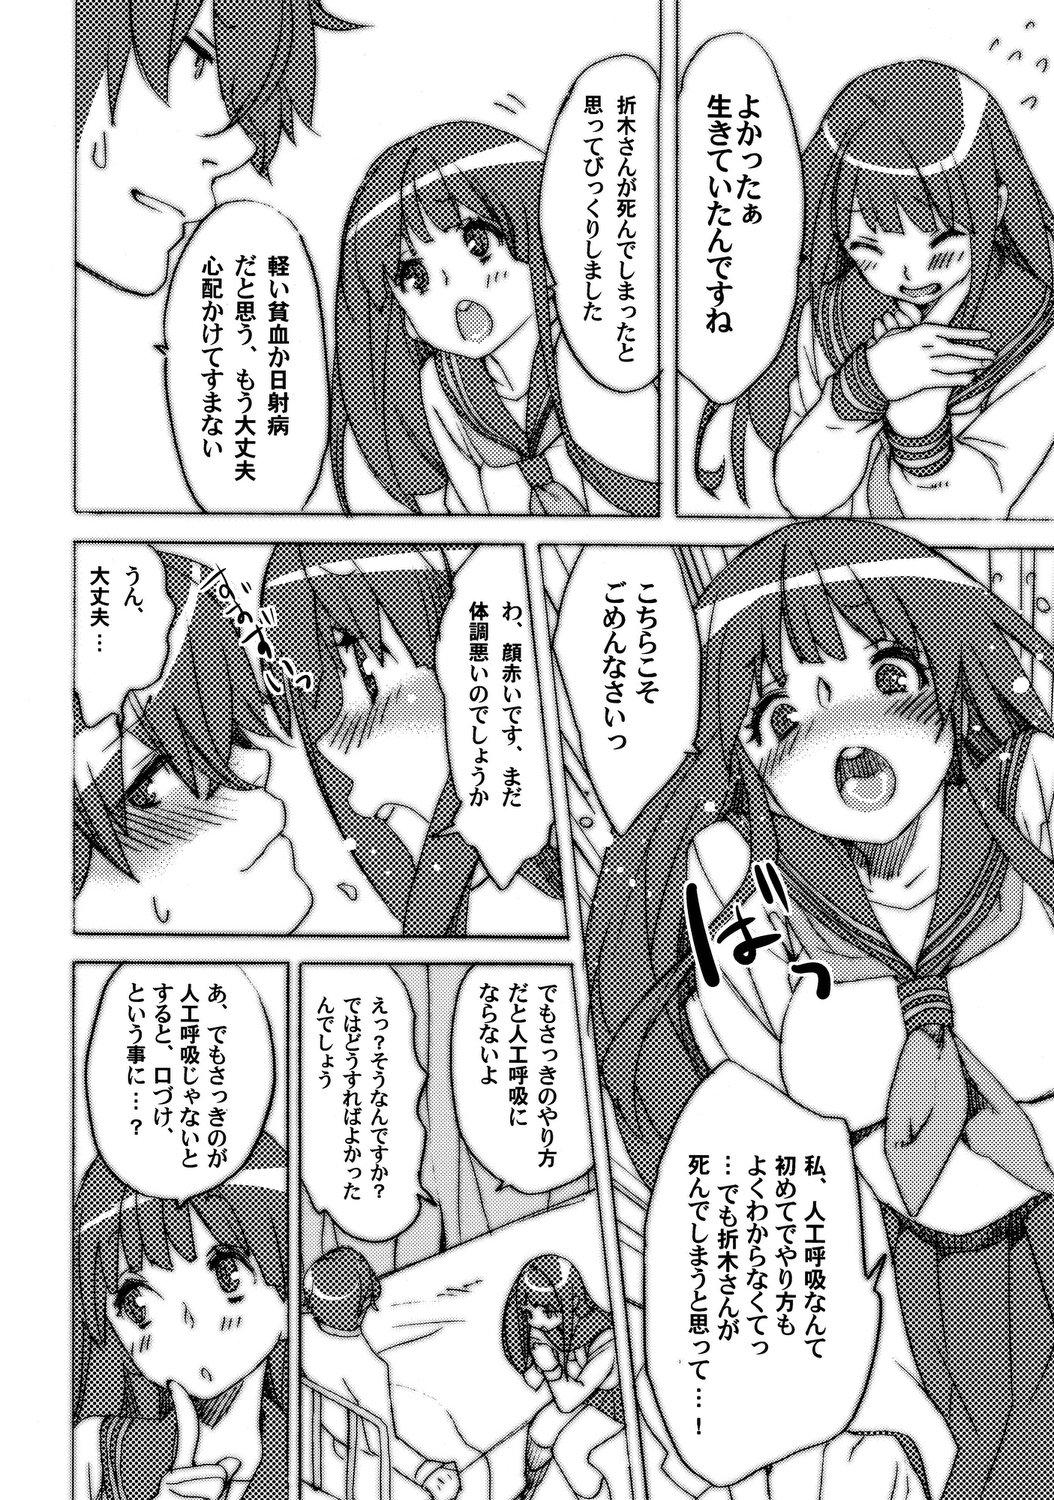 Enema Nikumaki Onigiri Tare koime - Hyouka Uncensored - Page 7